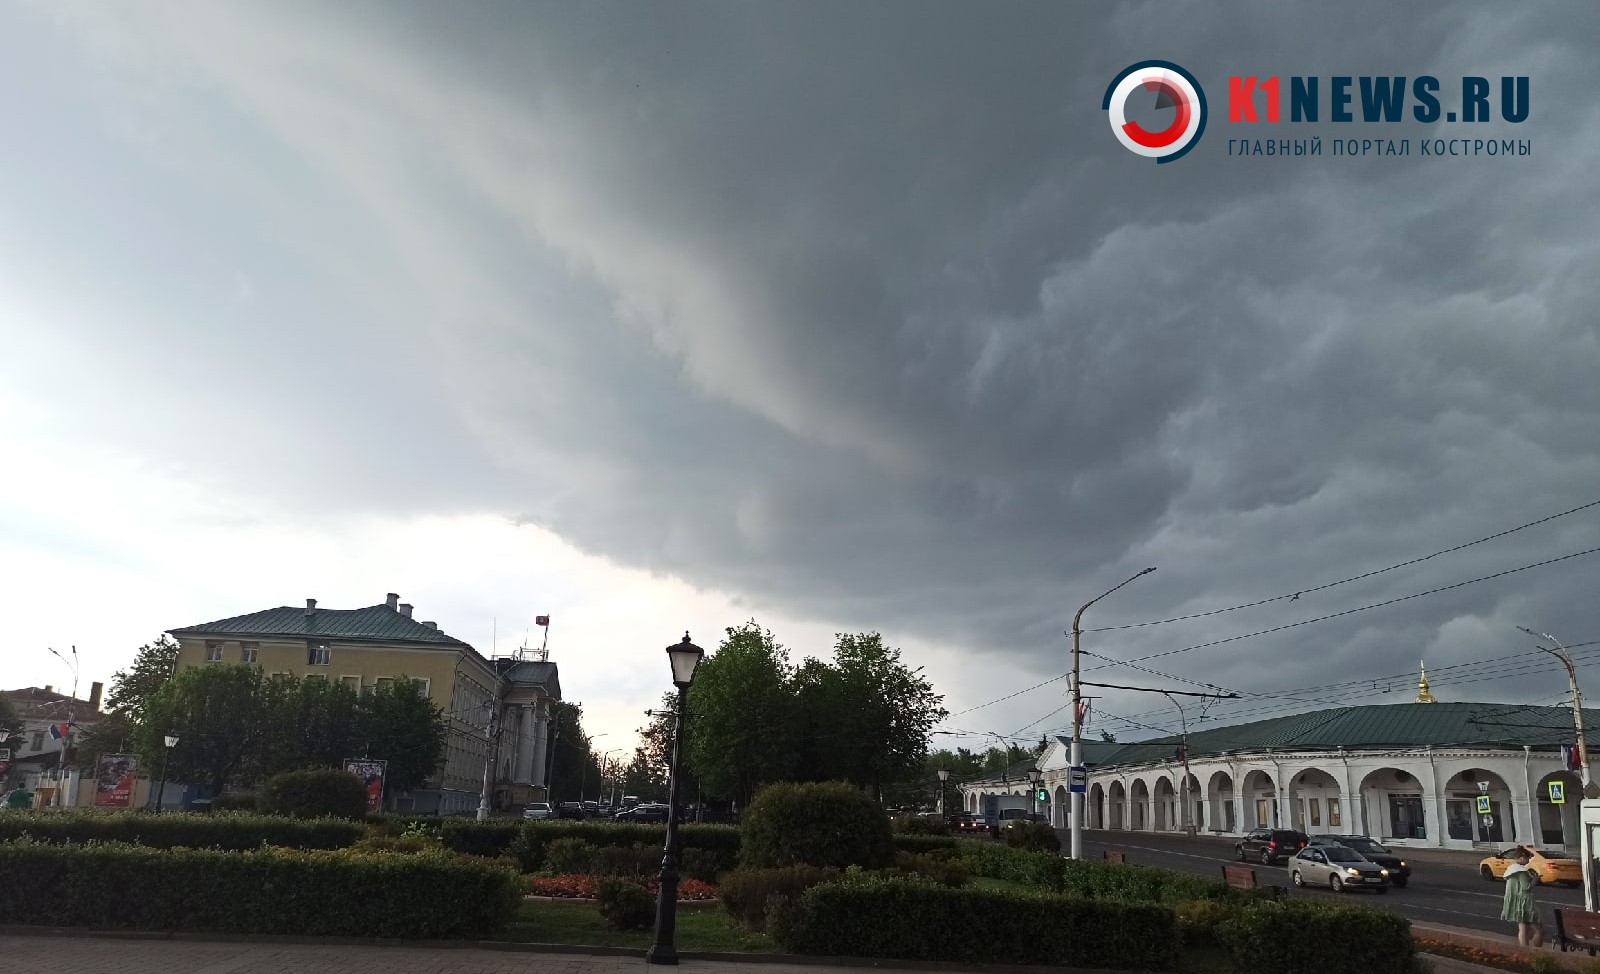 Гроза и сильный ветер ожидаются на территории Костромской области